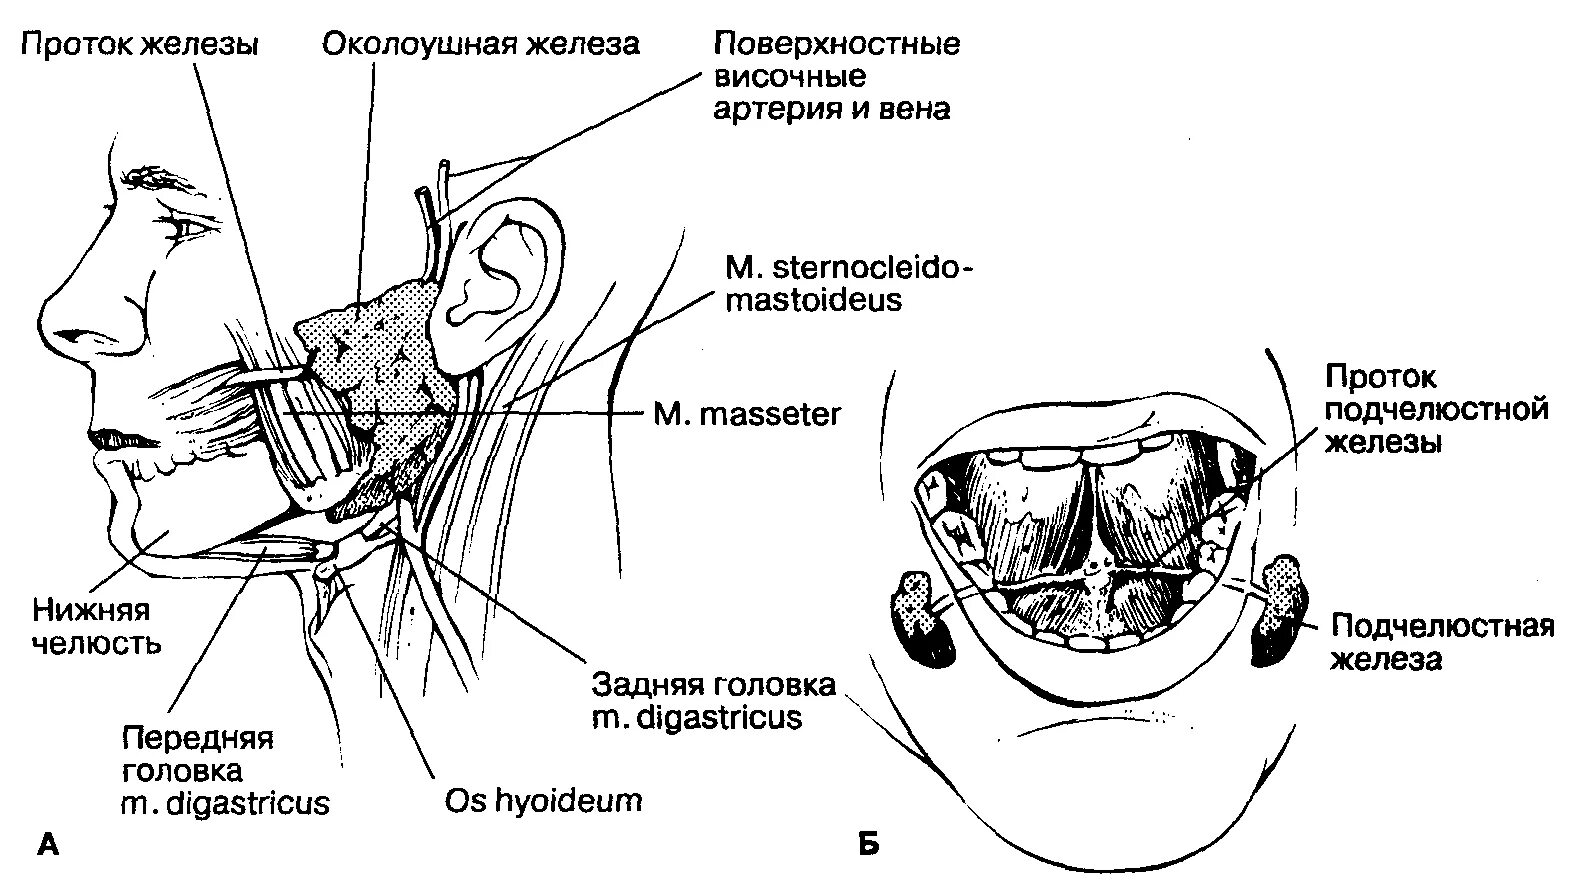 Строение поднижнечелюстной слюнной железы анатомия. Анатомия протока подчелюстной слюнной железы. Проток околоушной железы топография. Выводной проток околоушной слюнной железы анатомия. Для околоушной железы характерны